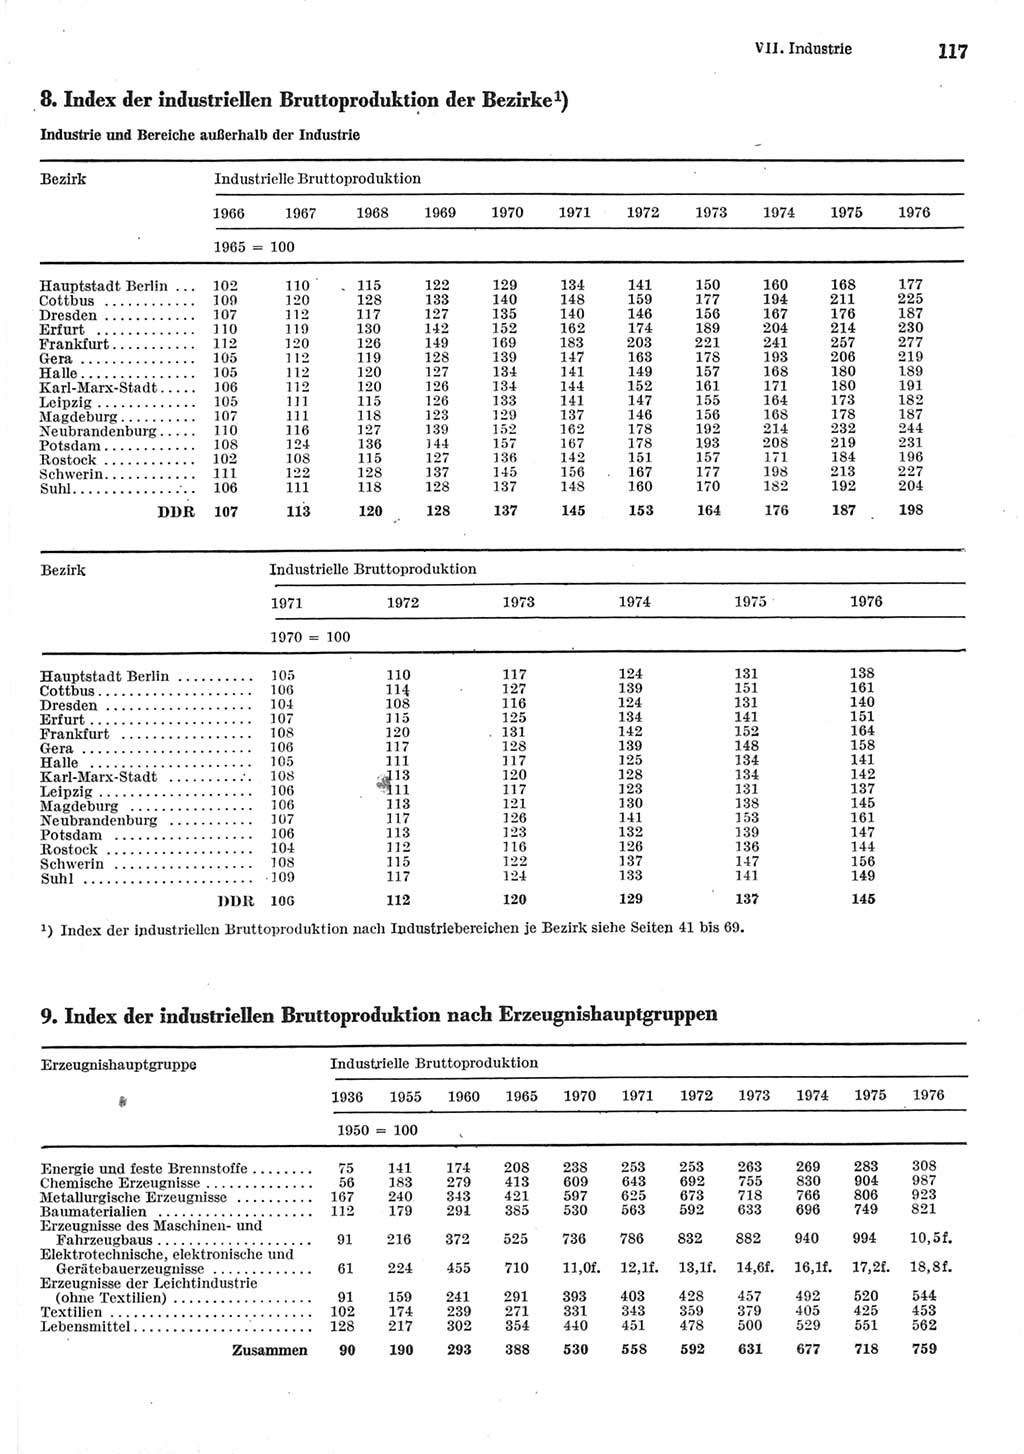 Statistisches Jahrbuch der Deutschen Demokratischen Republik (DDR) 1977, Seite 117 (Stat. Jb. DDR 1977, S. 117)